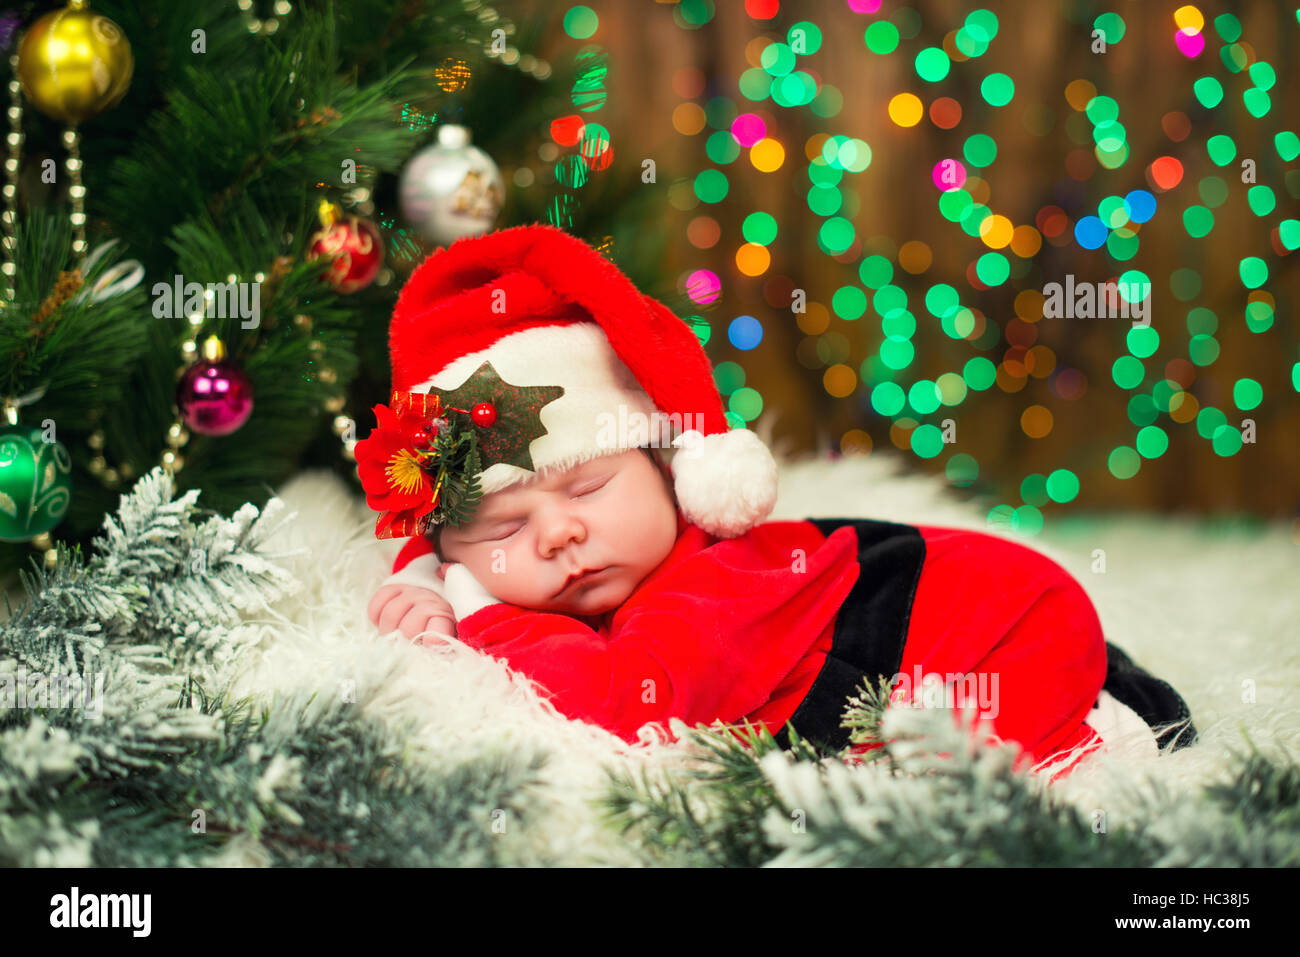 Foto Di Natale Neonati.Ritratto Di Neonato In Santa Vestiti Sdraiati Sotto L Albero Di Natale Foto Stock Alamy